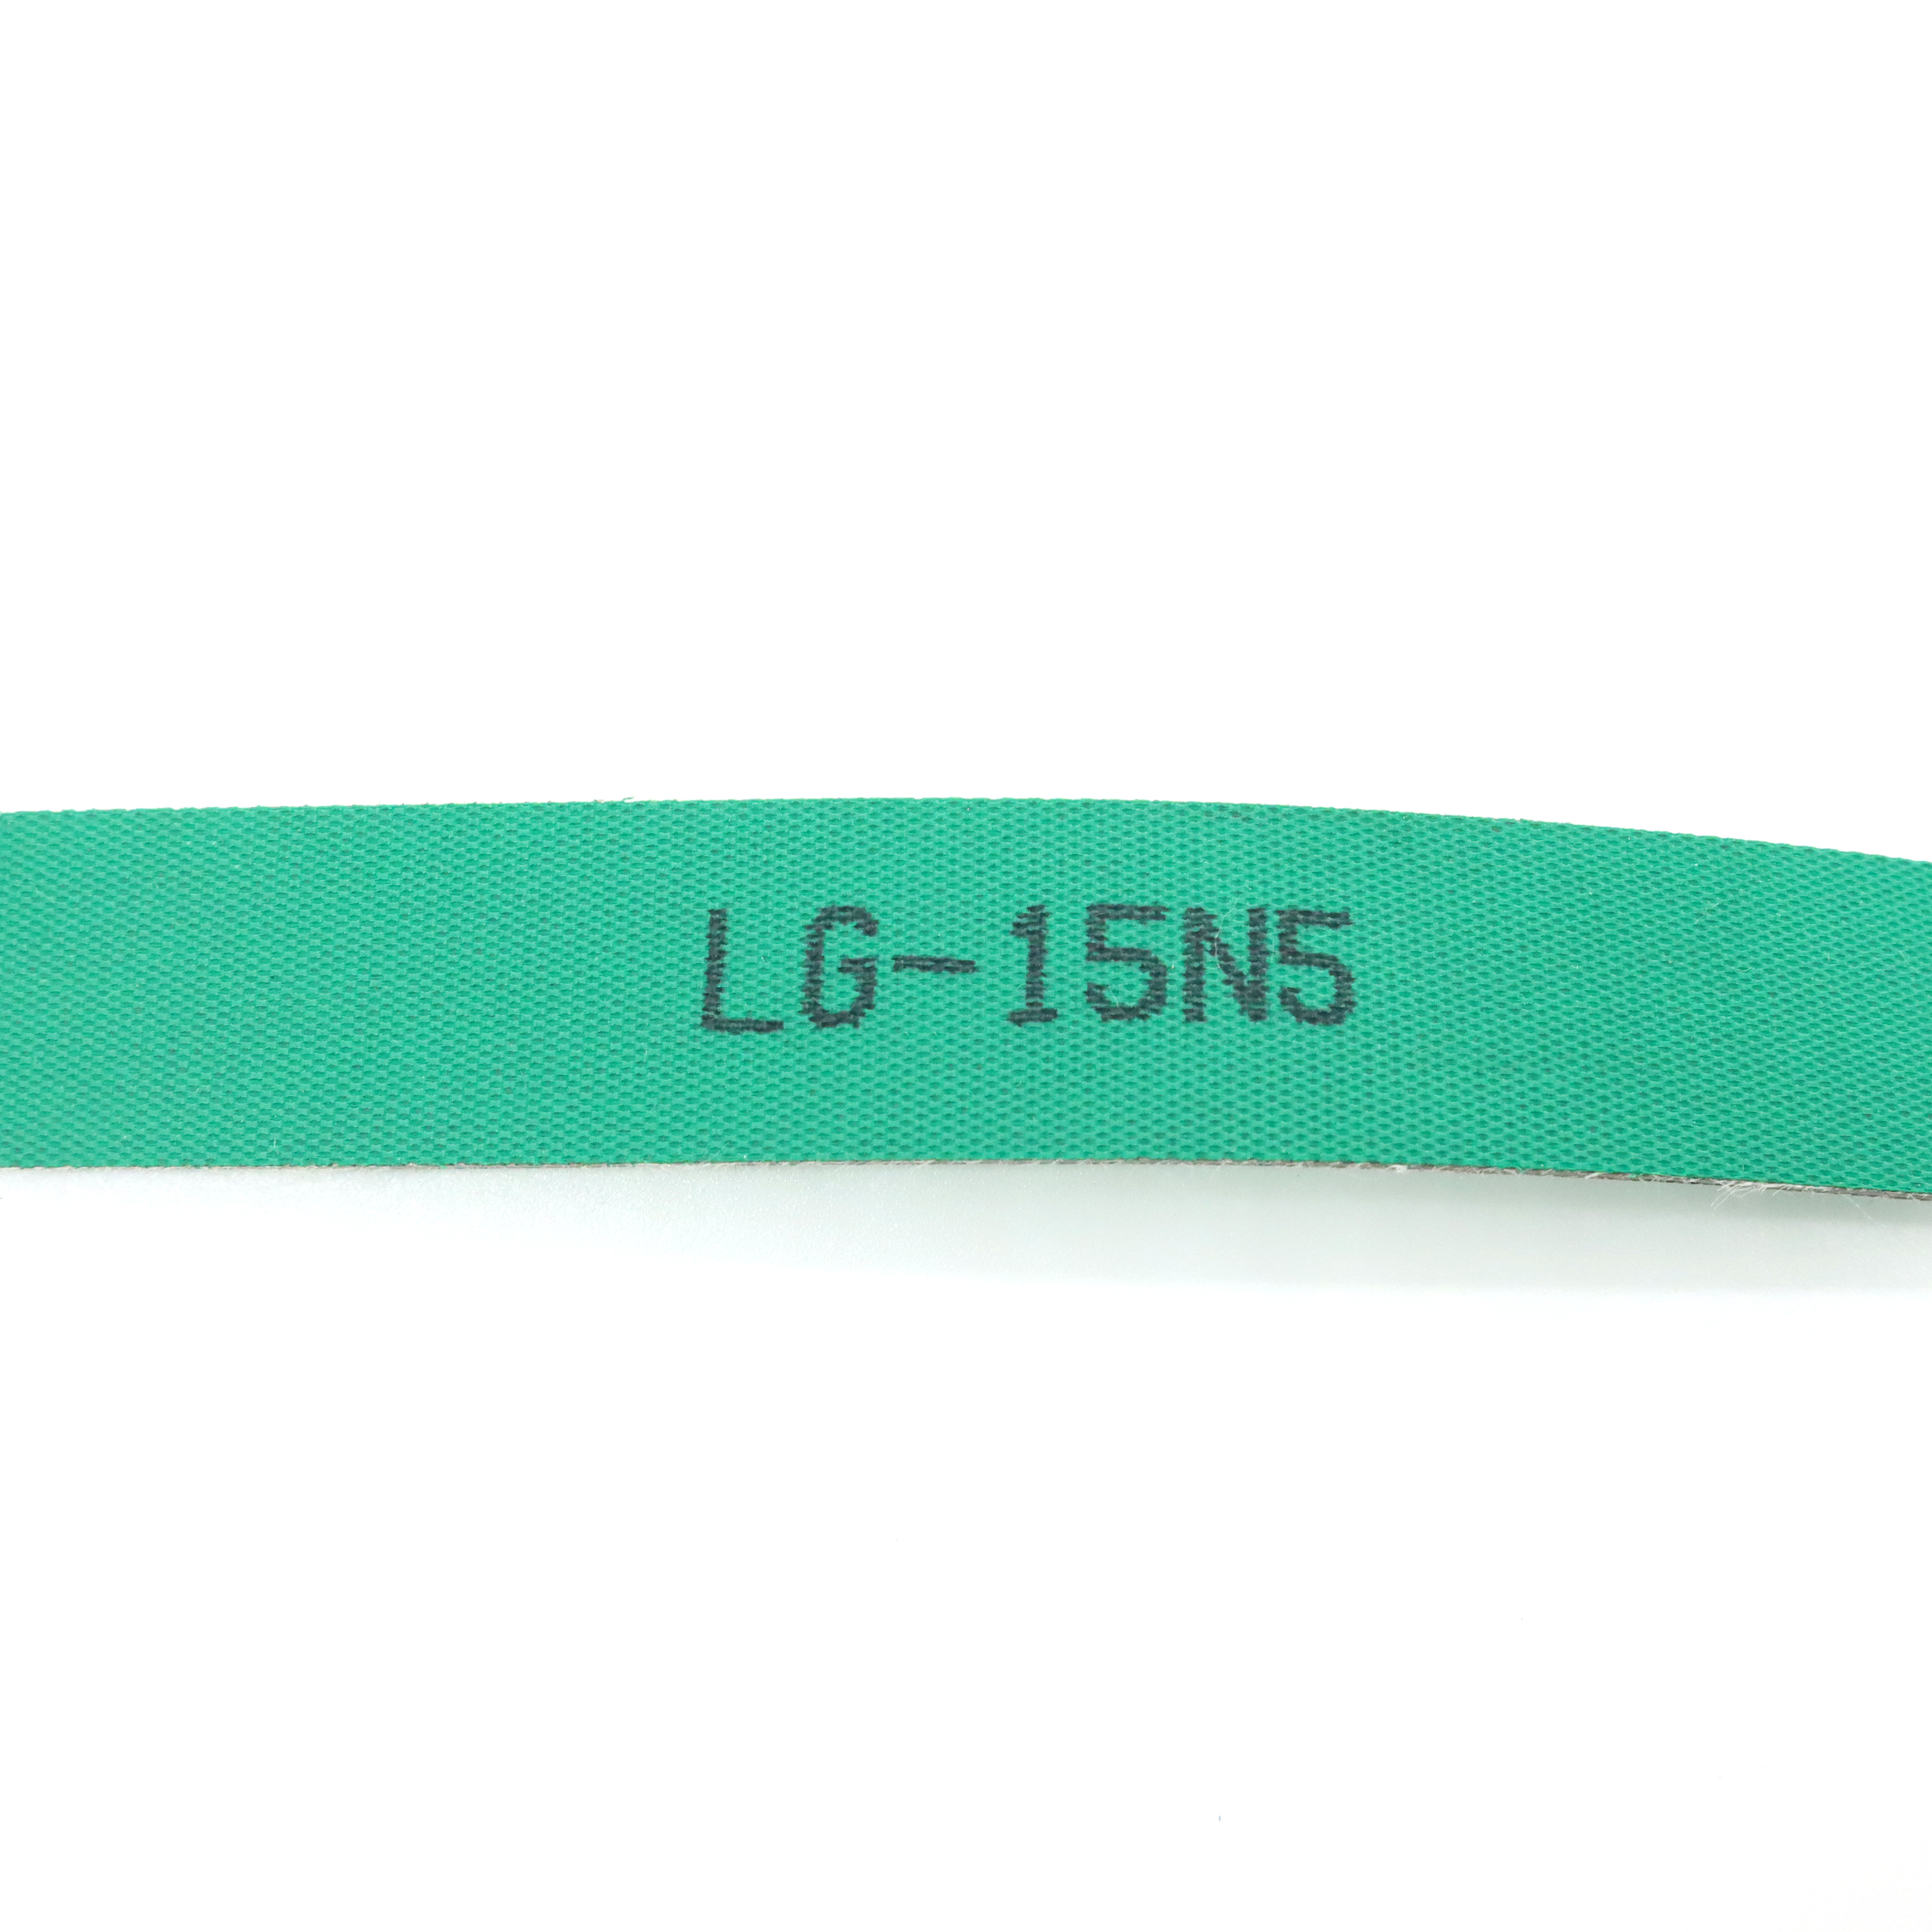 LG-15N5